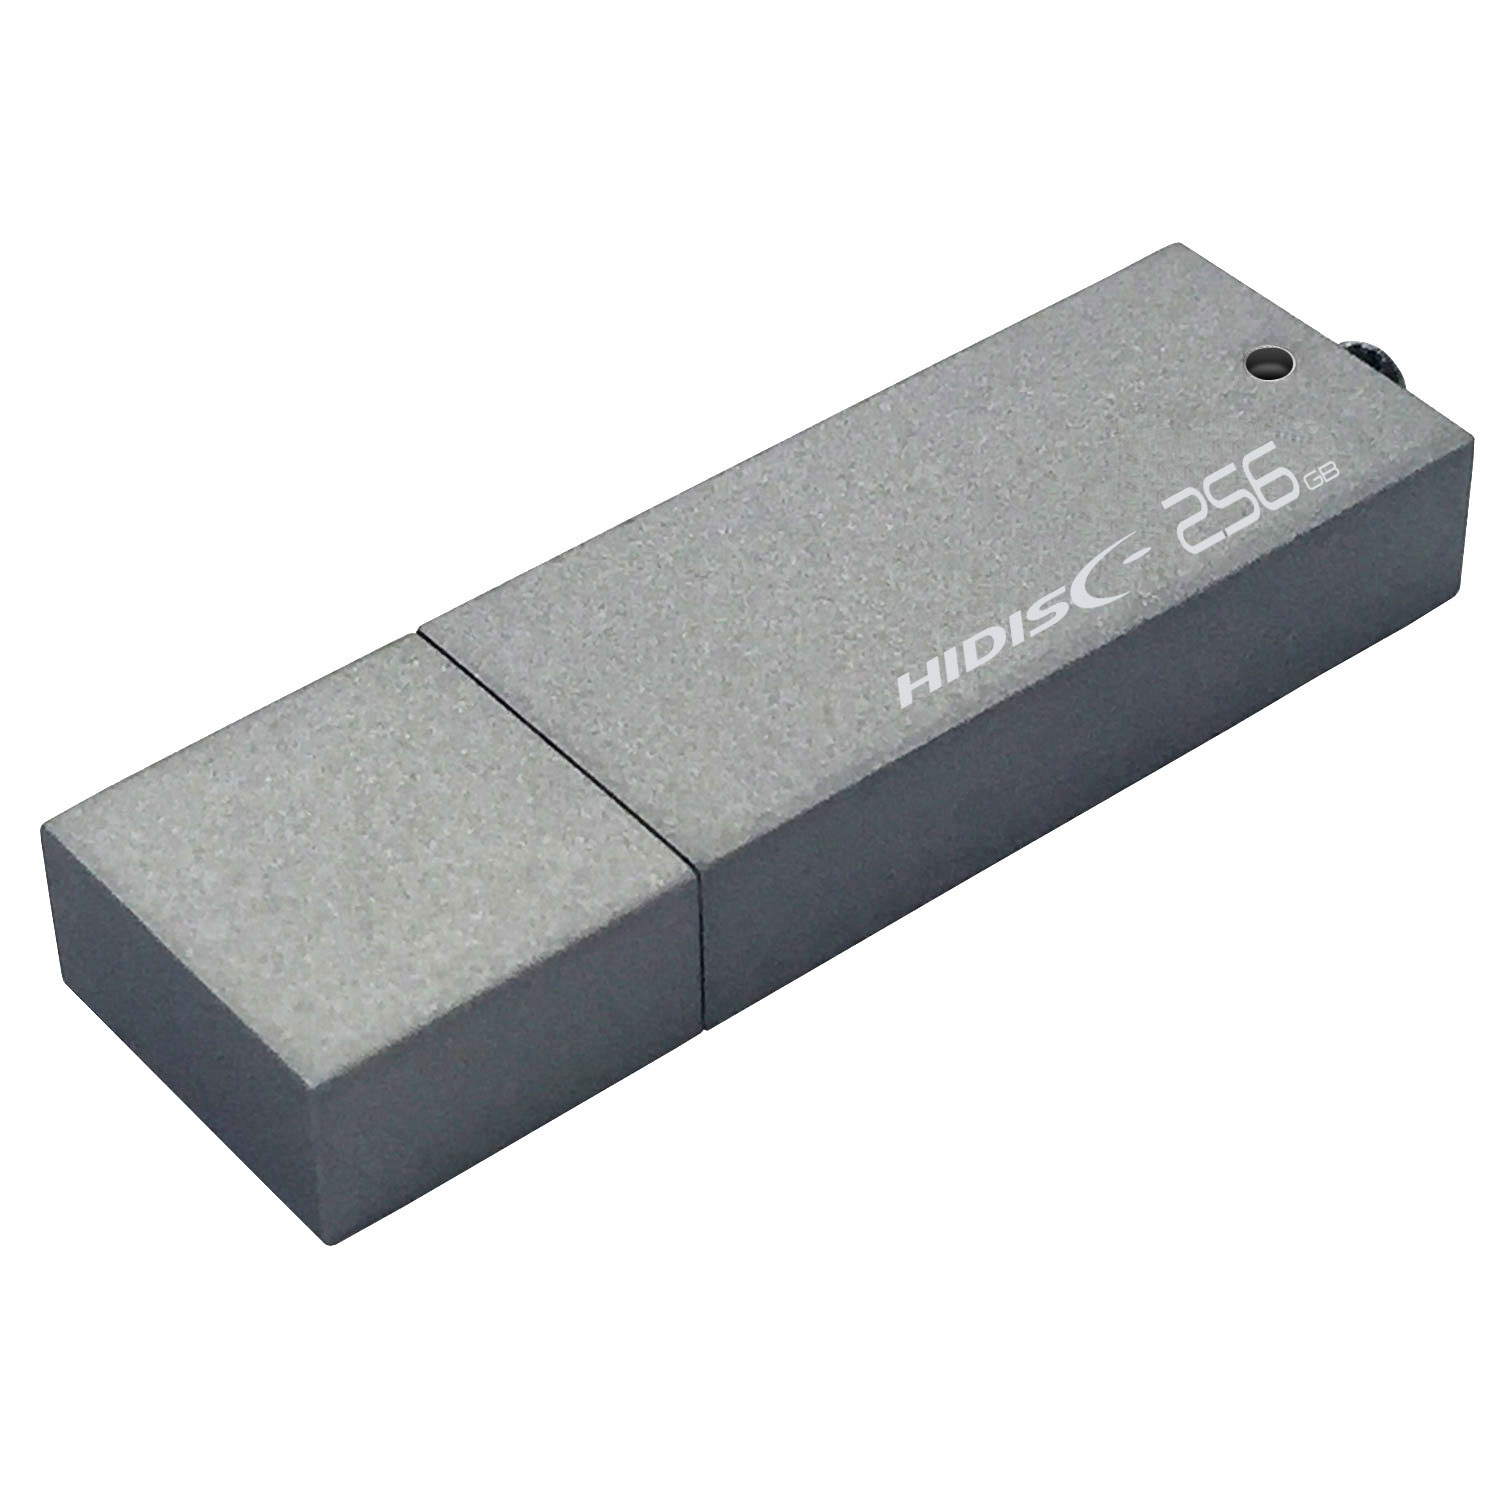 高速転送 HIDISC USB 3.0 フラッシュドライブ 256GB シルバー キャップ式